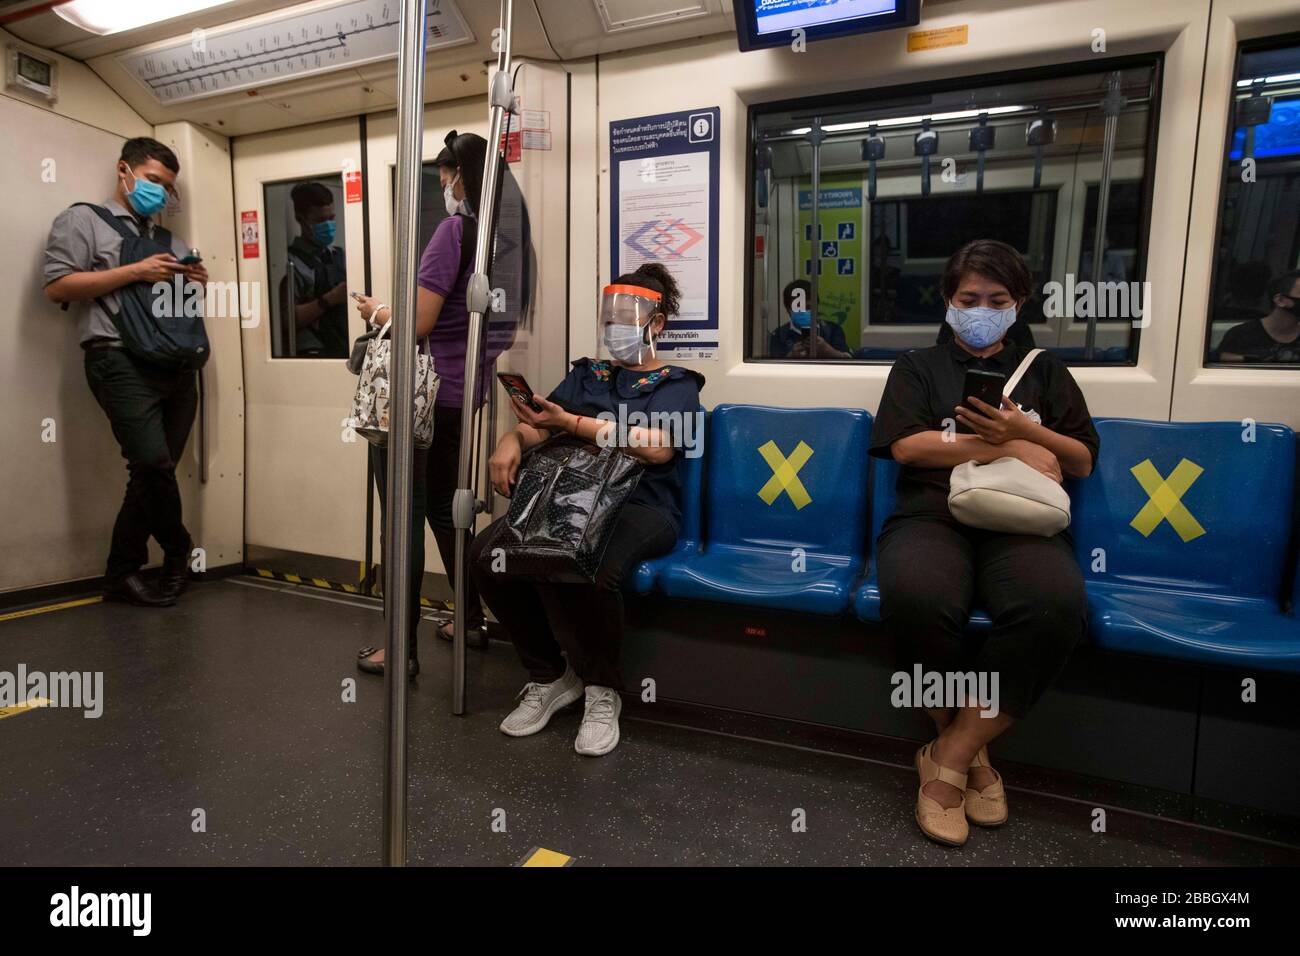 Bangkok, Bangkok, Thailand. März 2020. Fahrer üben auf Reisen soziale Distanzierung in der U-Bahn. Die Bürger Bangkoks leben seit dem 26. März unter einer teilweisen Sperrung der Stadt, da die tägliche Anzahl der bestätigten Covid-19-Fälle stetig zugenommen hat. Soziale Distanzierung und Selbstisolation wurden von den Behörden gefördert, obwohl es aufgrund der täglichen Verpflichtungen, die viele Menschen haben, oft schwierig ist, diese beizubehalten. Credit: Adryel Talamantes/ZUMA Wire/Alamy Live News Stockfoto